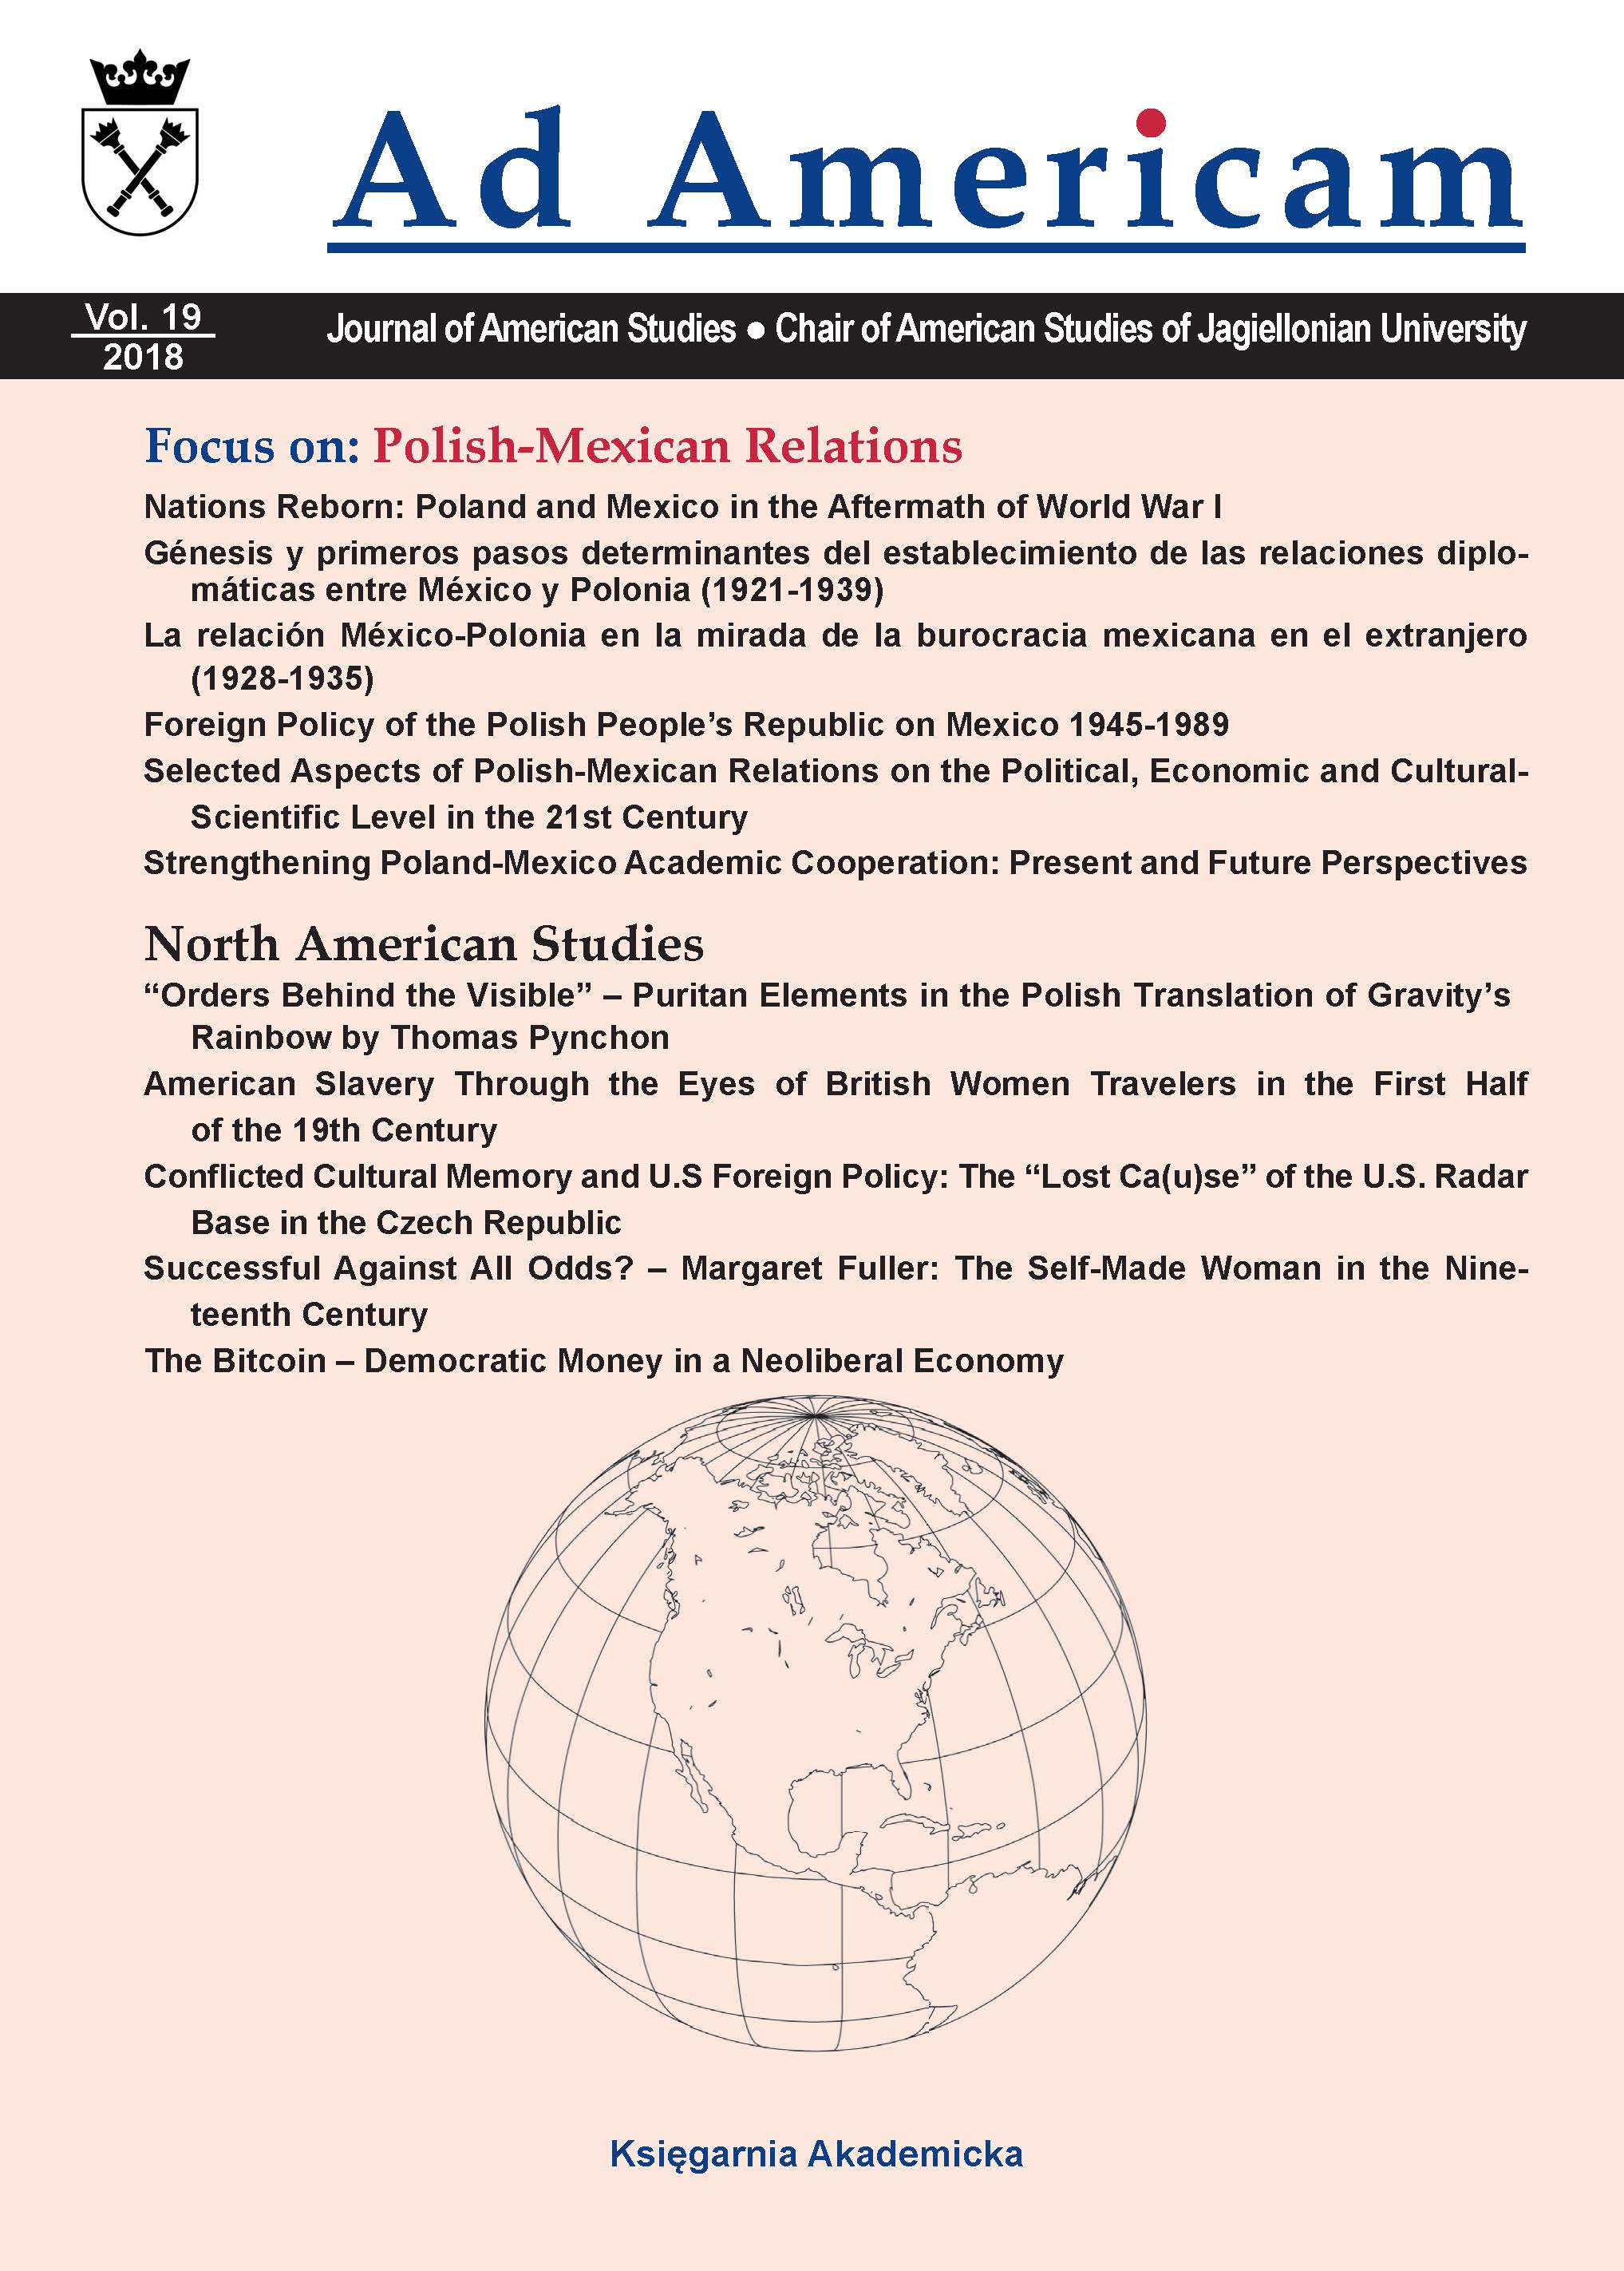 Génesis y primeros pasos determinantes del establecimiento de las relaciones diplomáticas entre México y Polonia (1921-1939)